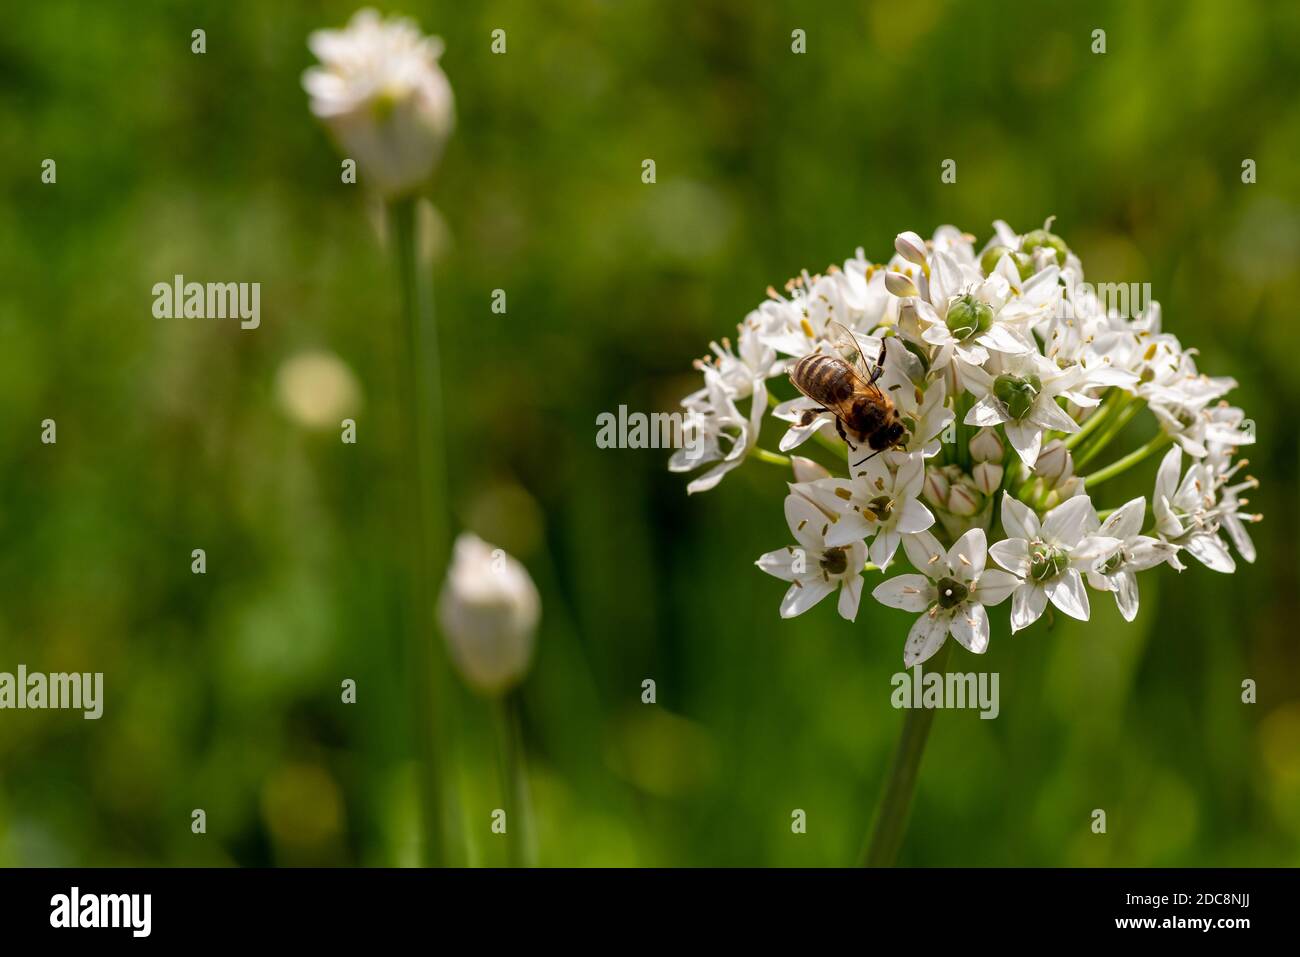 Blütenstand von Knoblauch Schnittlauch mit einer Biene, zwei weitere, noch geschlossene Blüten im verschwommenen Hintergrund links Stockfoto